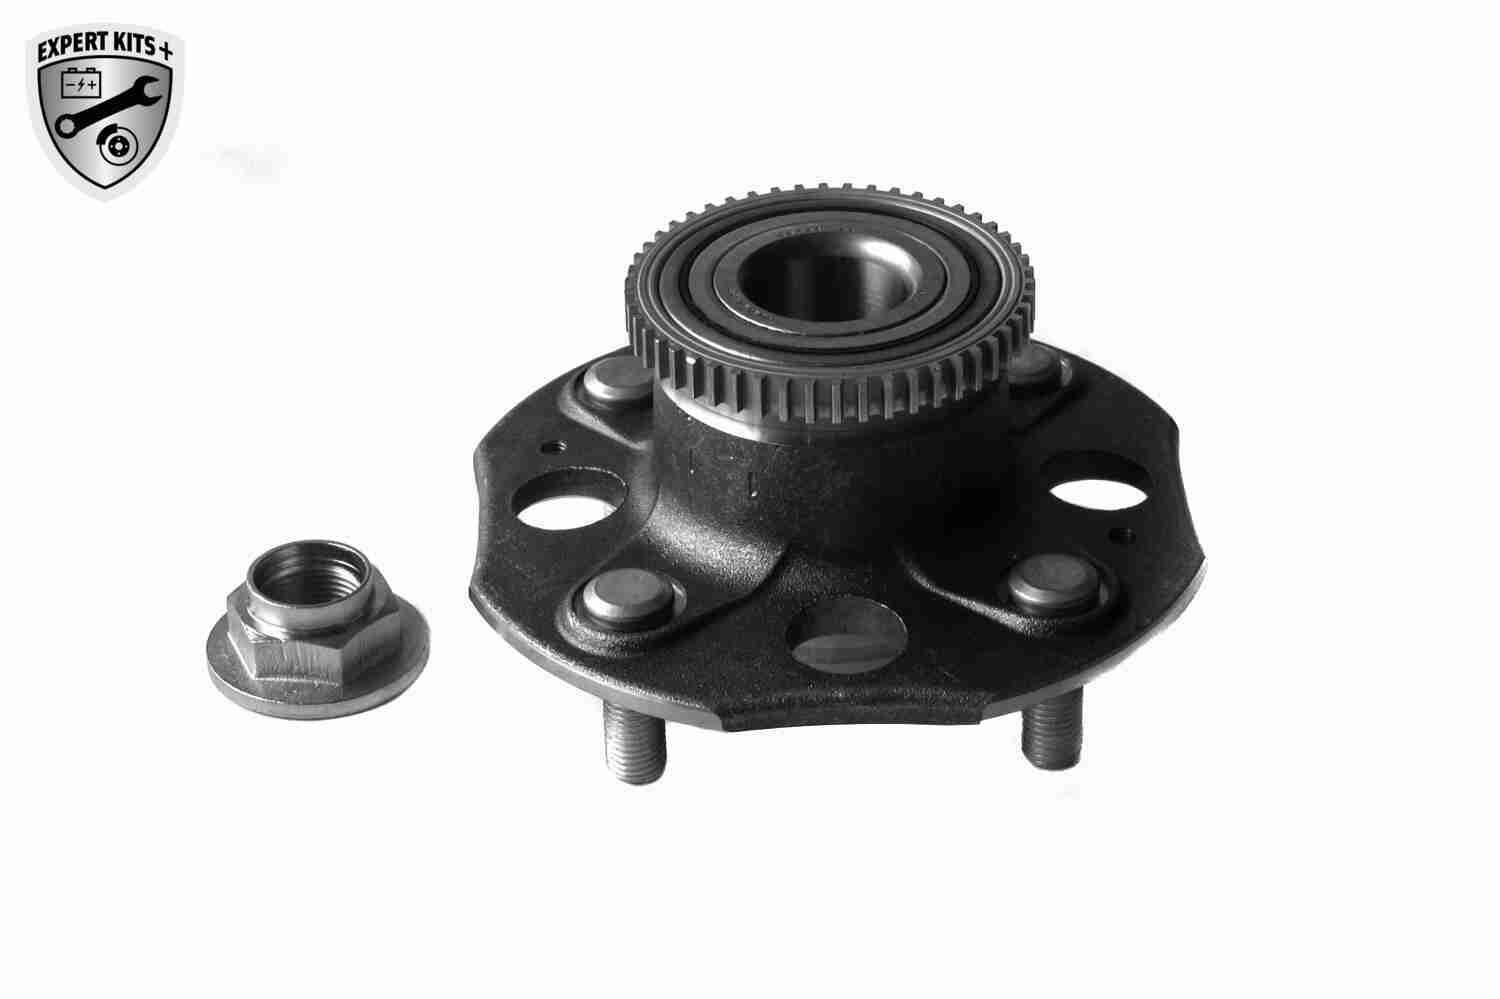 VAICO V26-0066 Wheel bearing kit Rear Axle, EXPERT KITS +, 152 mm